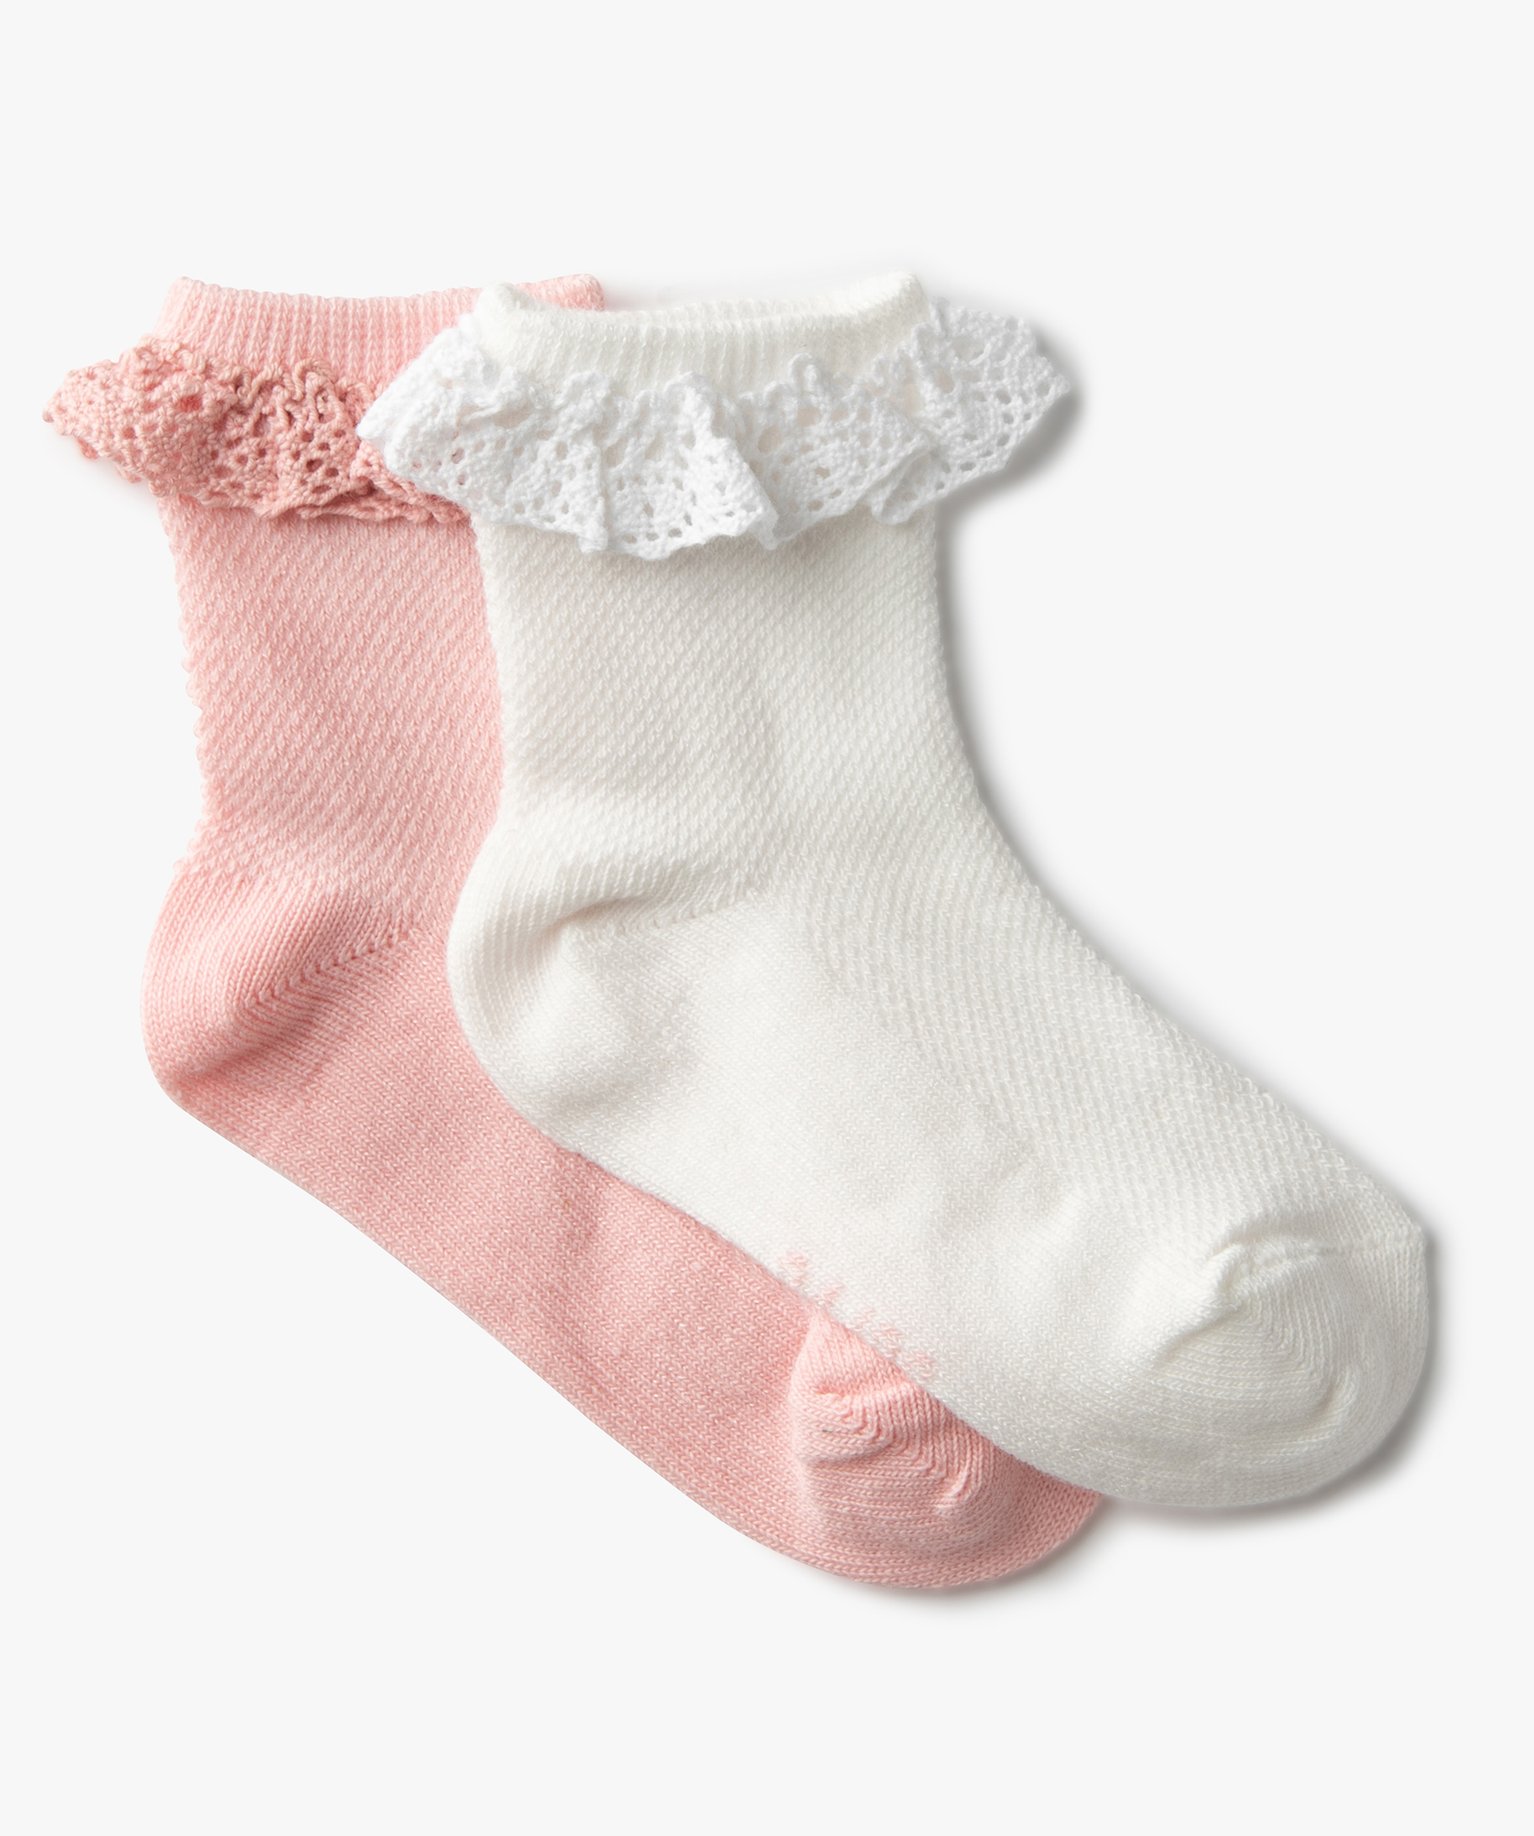 BASSK 5 paires//lot mignonne bébé fille coton à volants chaussettes nouveau-né respirant princesse dentelle courte chaussette lot pour bébé filles vêtements accessoire